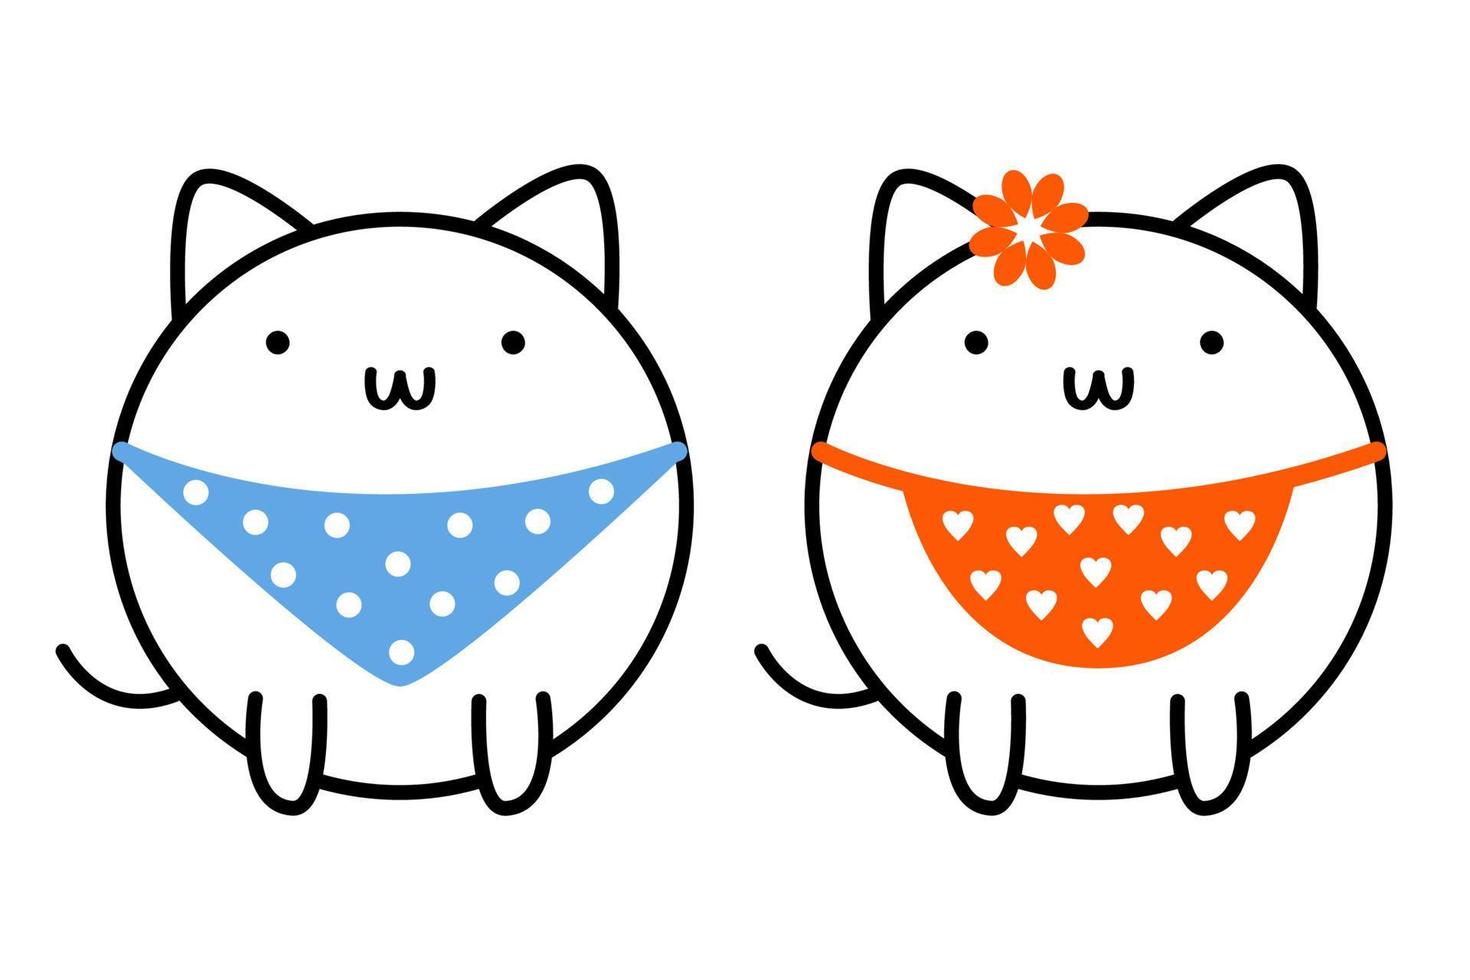 schattig katten in schorten. vector illustratie van katjes. schets pictogrammen van huisdier. lineair tekening van grappig dieren.